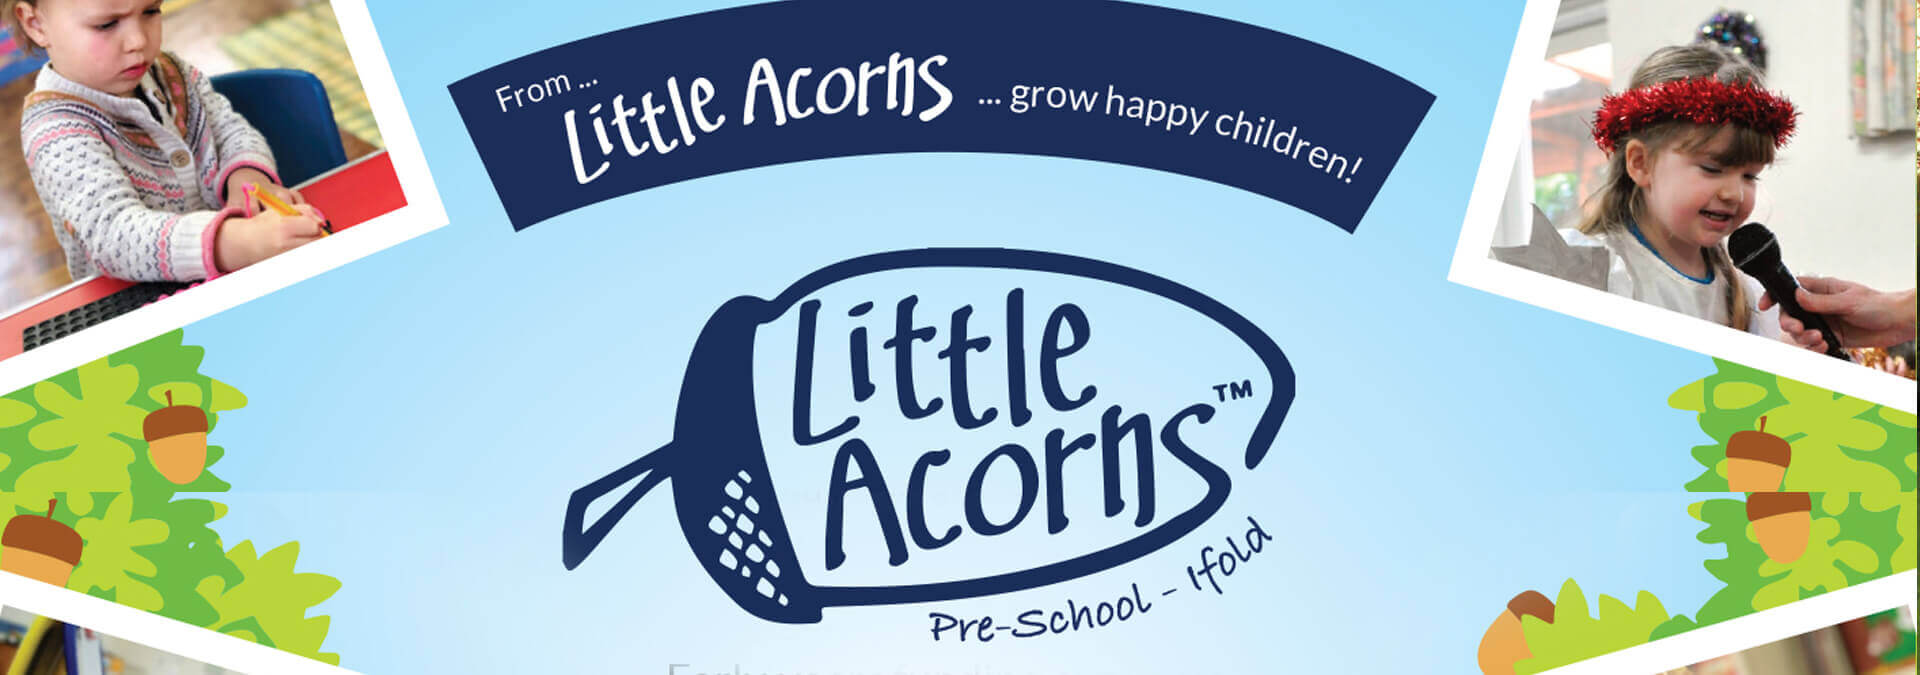 Little Acorns Preschool